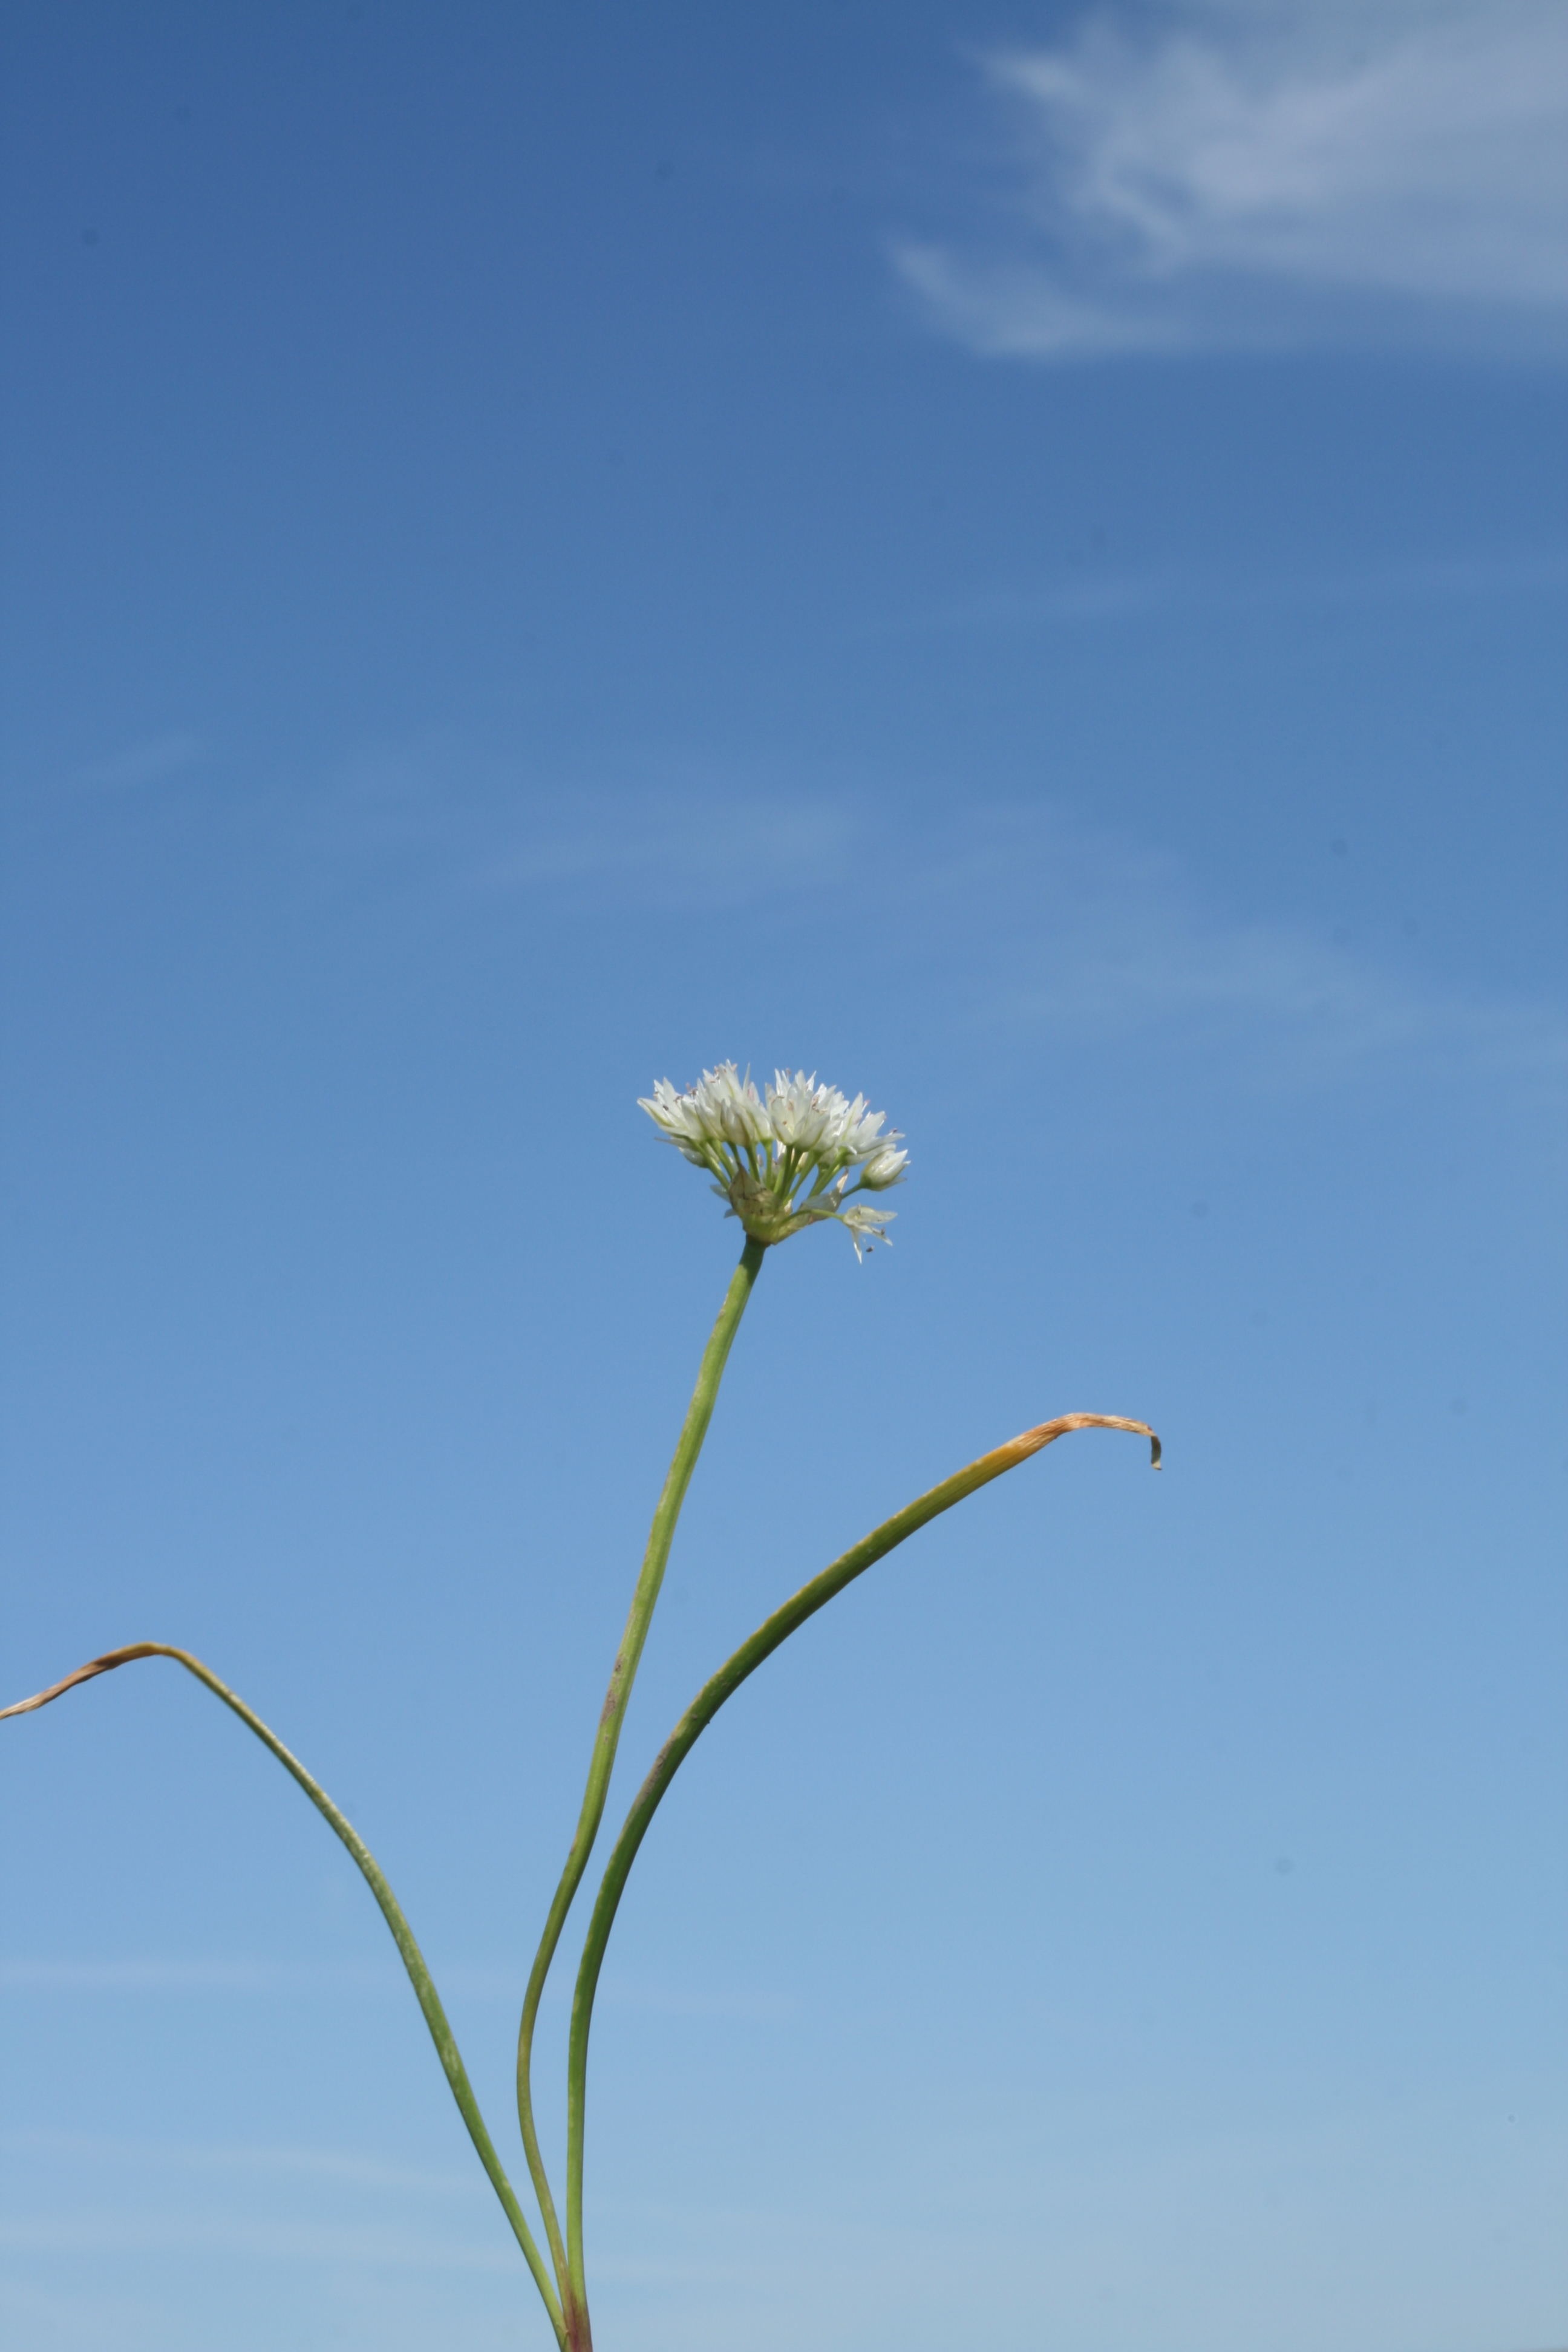 swamp onion (Allium madidum)